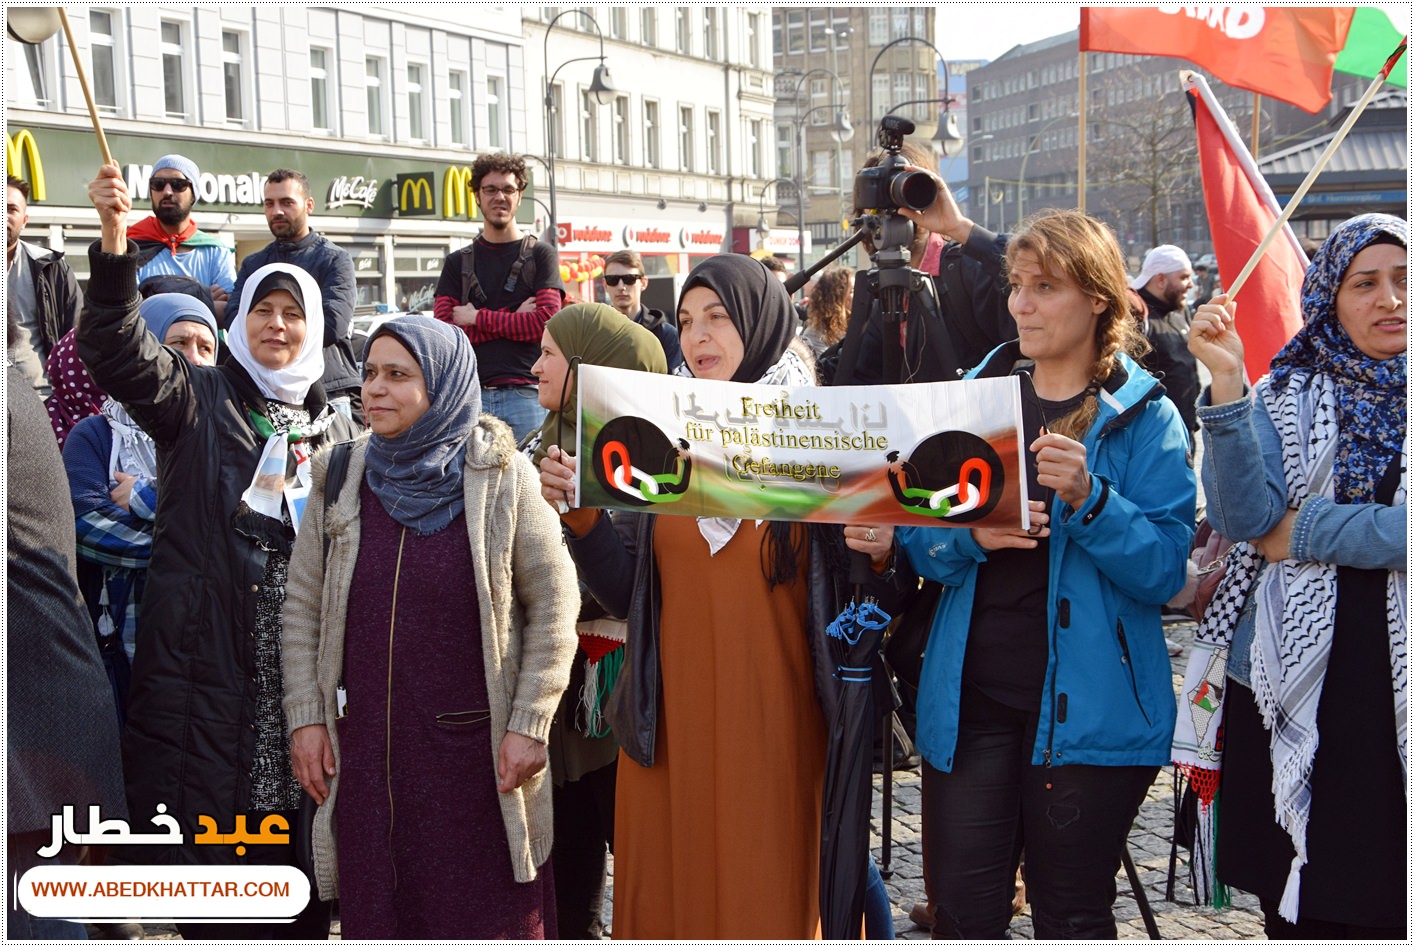 وقفة إحتجاجيّة في العاصمة الألمانيّة برلين تضامناً مع مسيرة العودة الكبرى ونصرة لأهلنا في غزة الصامدة وبمناسبة يوم الأسير الفلسطيني